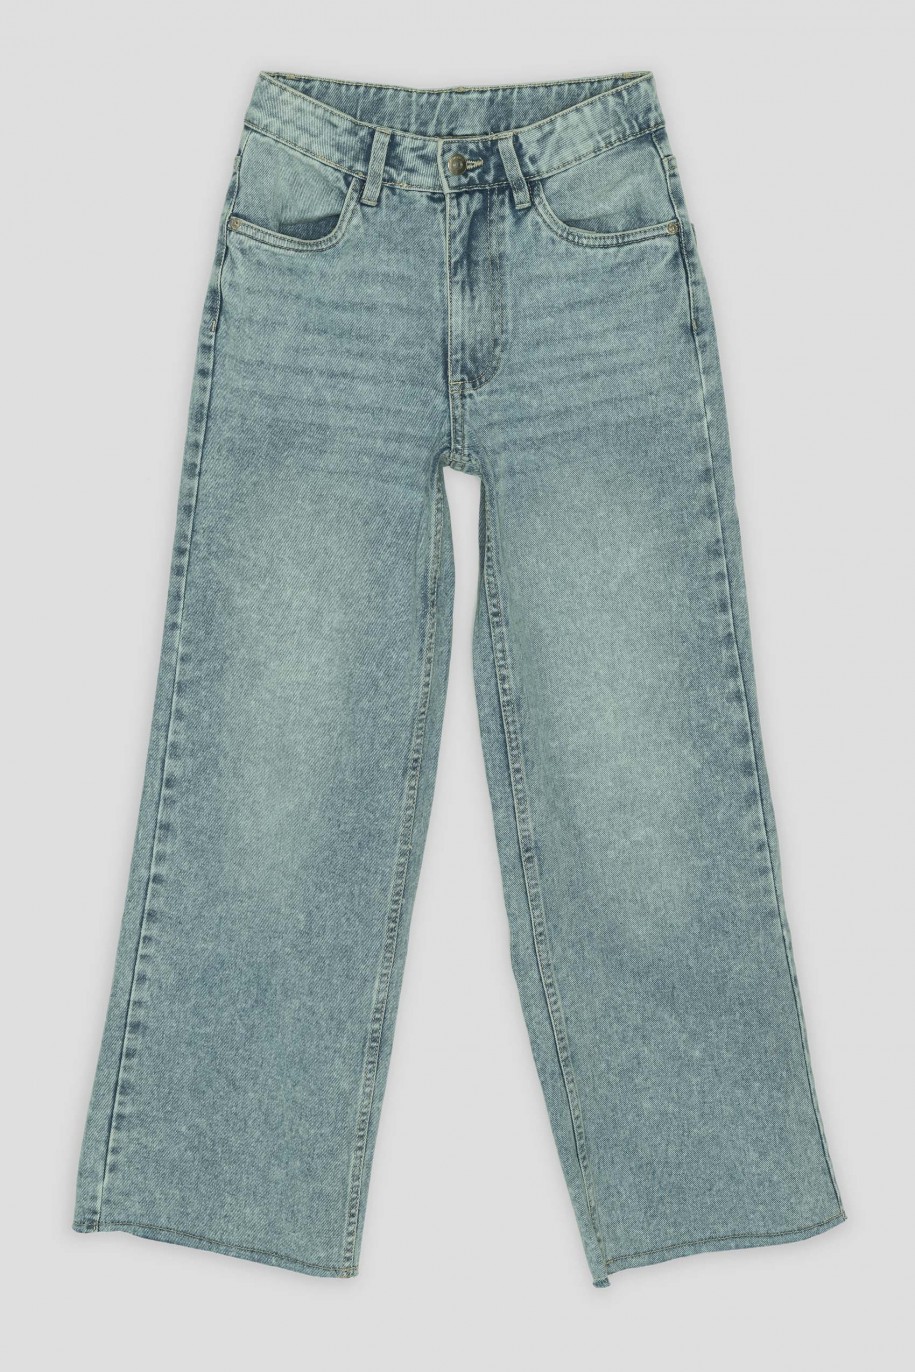 Niebieskie jeansy typu WIDE LEG - 40288